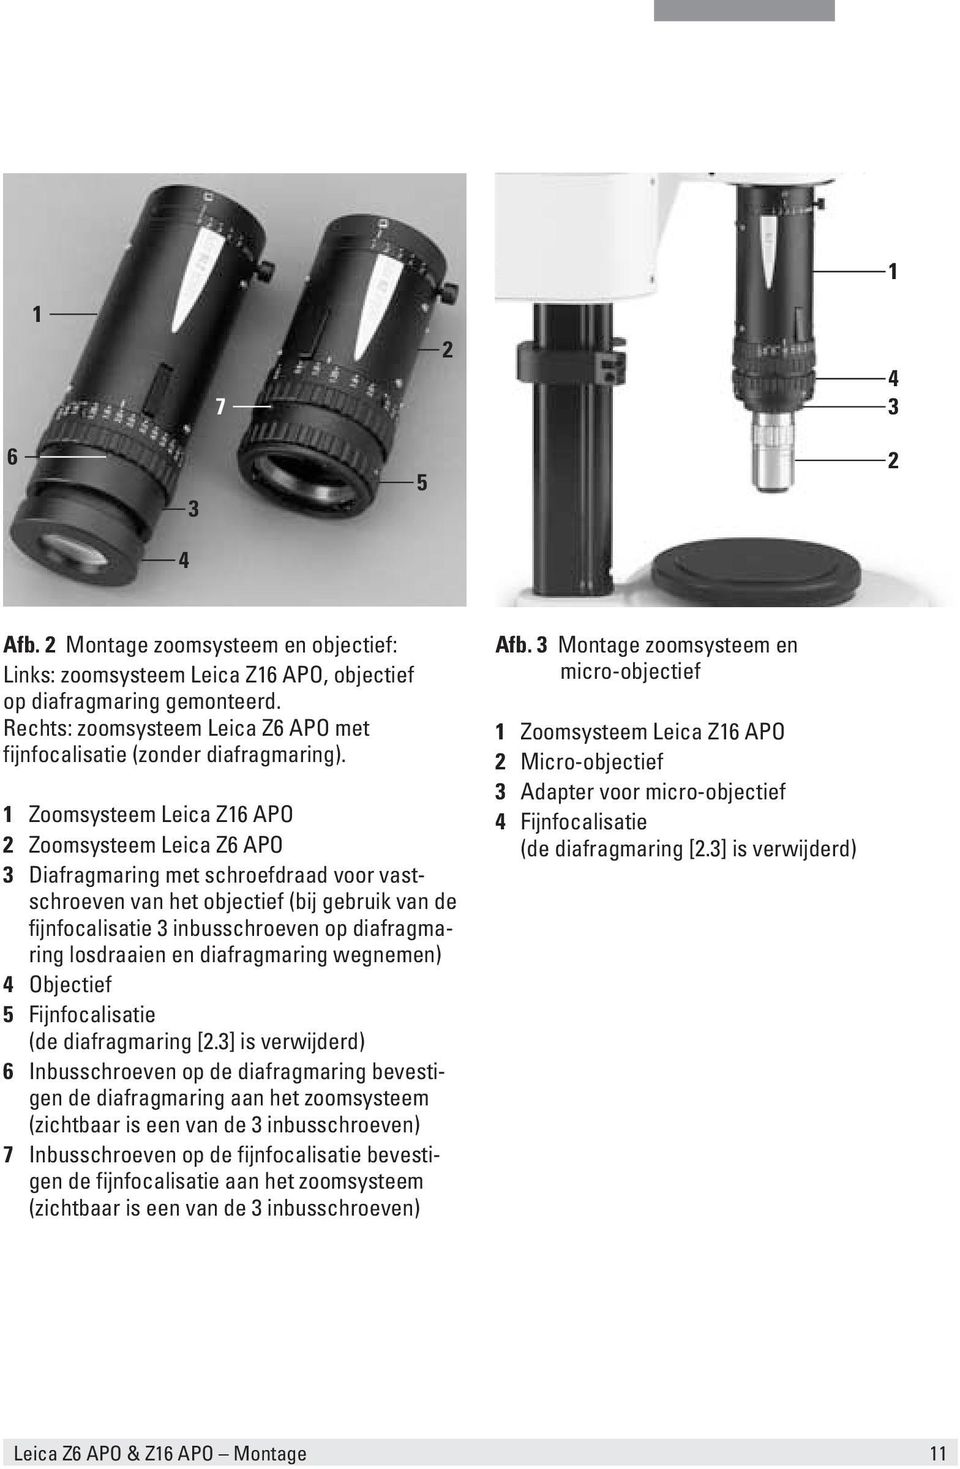 1 Zoomsysteem Leica Z16 APO 2 Zoomsysteem Leica Z6 APO 3 Diafragmaring met schroefdraad voor vastschroeven van het objectief (bij gebruik van de fijnfocalisatie 3 inbusschroeven op diafragmaring